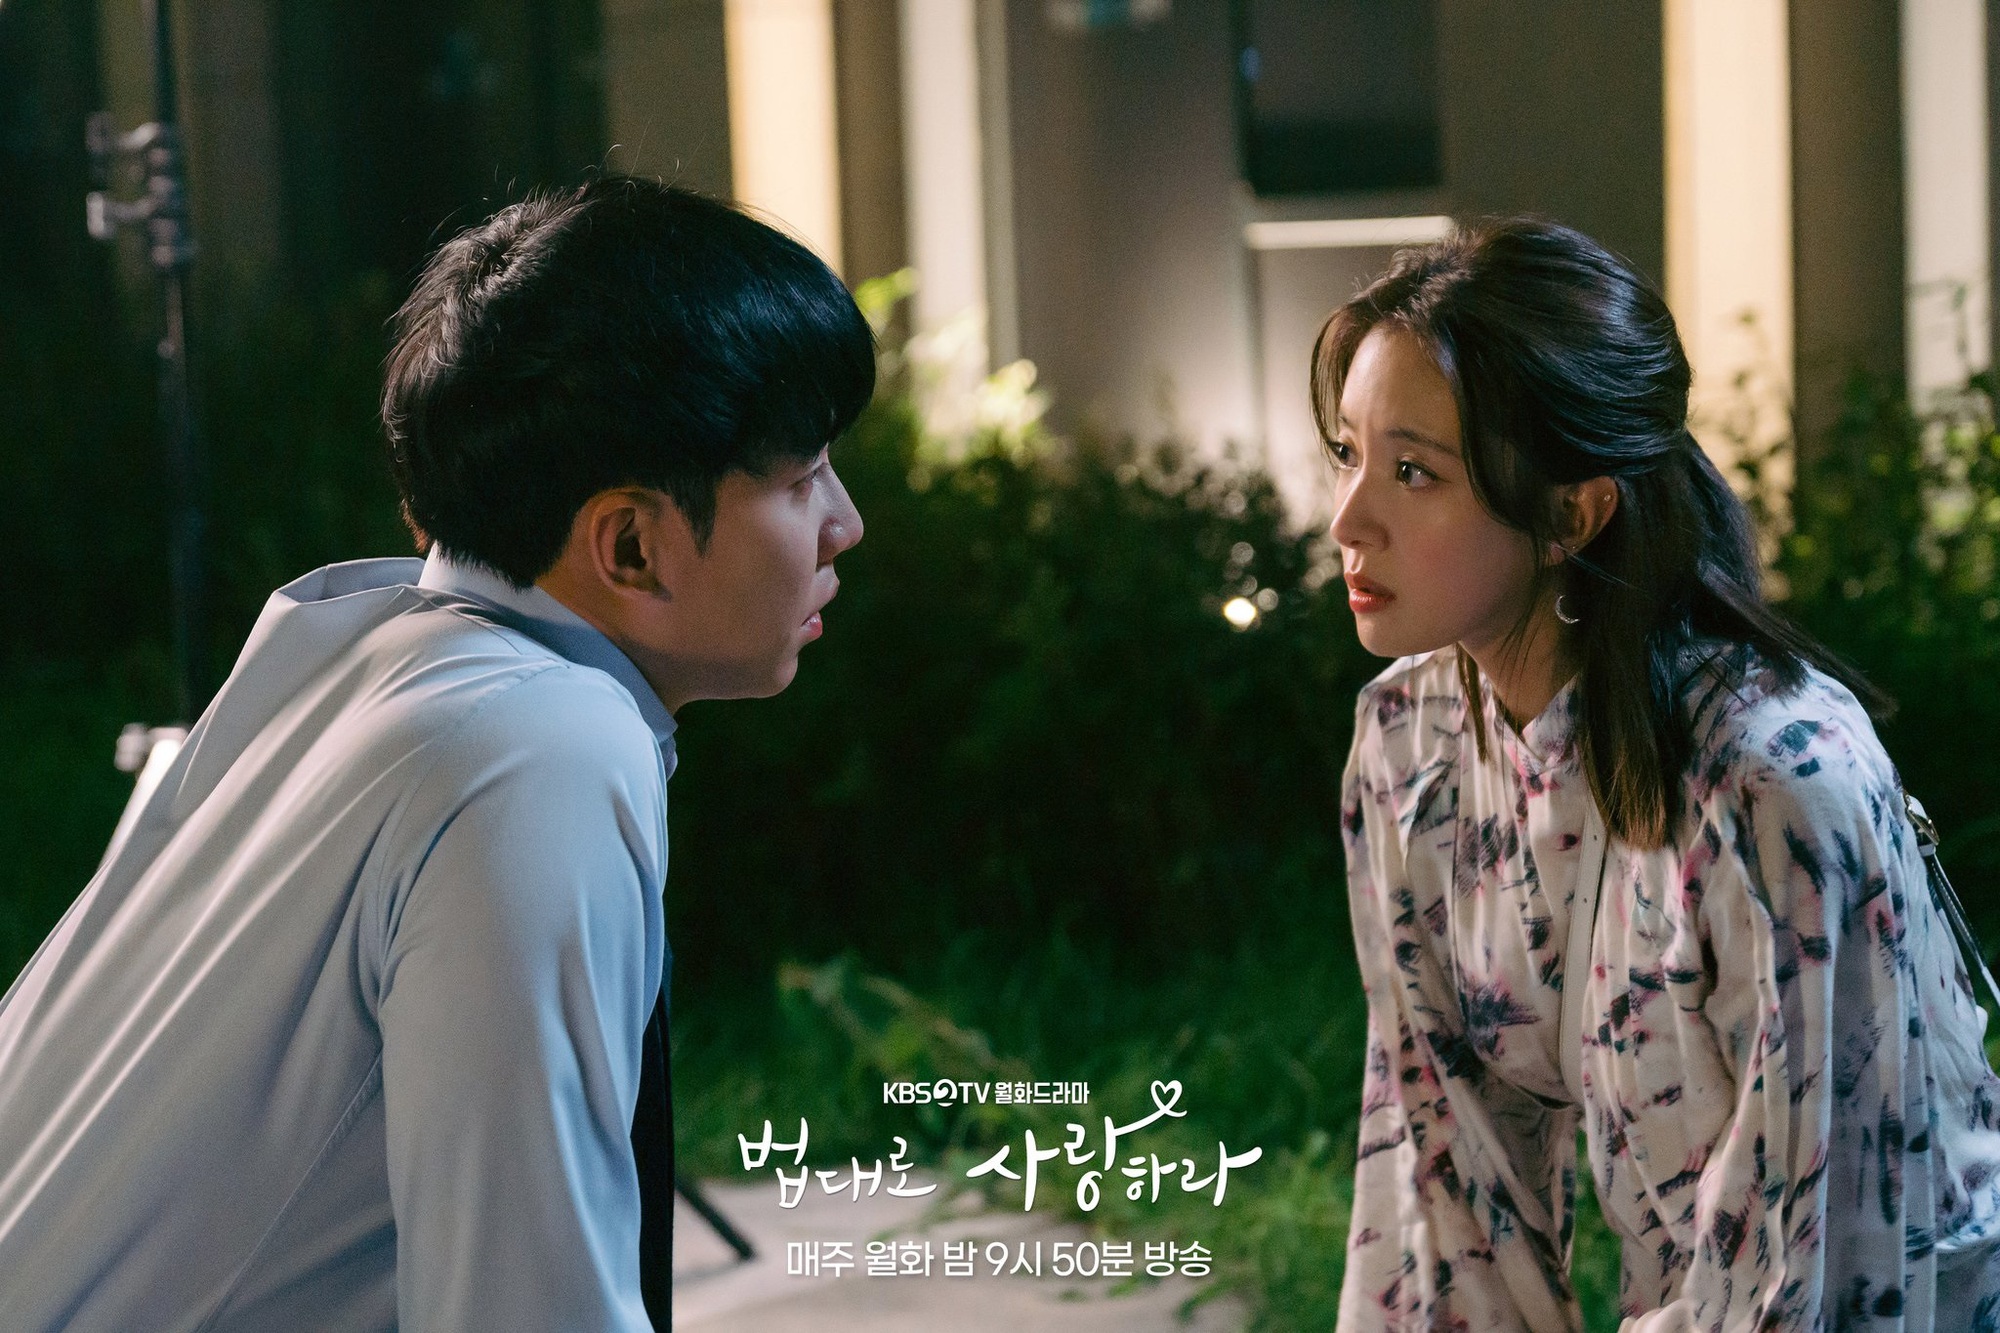 Quán cafe luật: Lee Seung Gi - Lee Se Young diễn xuất biến hóa, cùng viết nên câu chuyện tình yêu  - Ảnh 2.